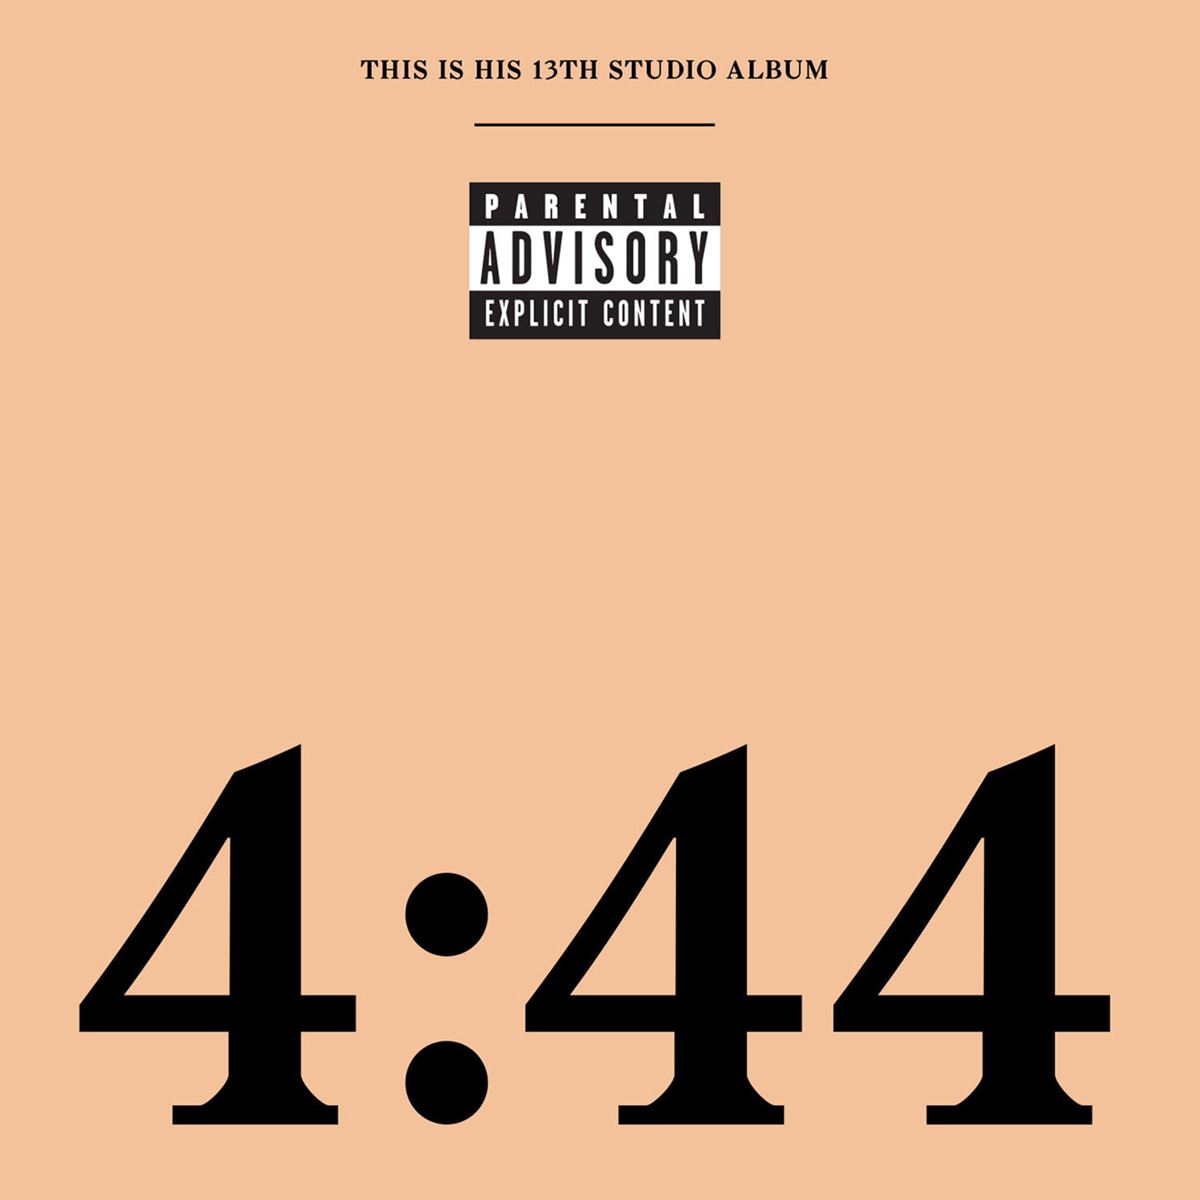 CD 4.44 Jay Z